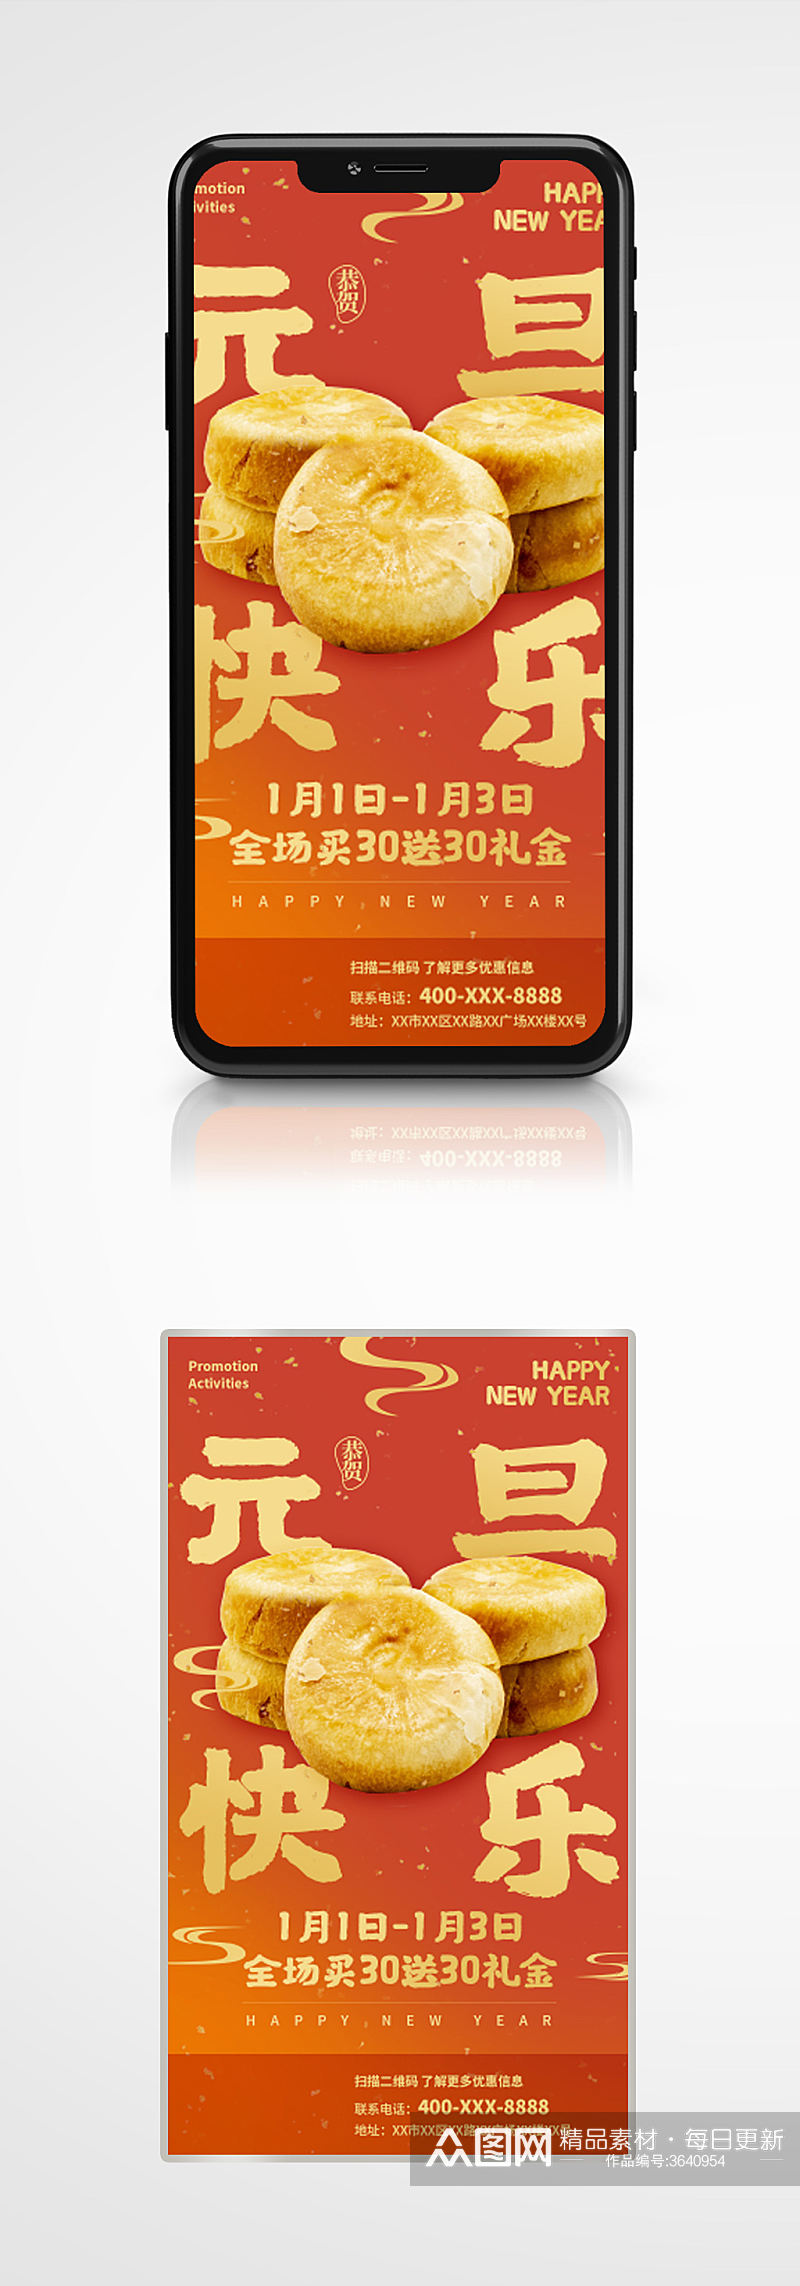 趋势红食品美食促销手机海报元旦节日素材